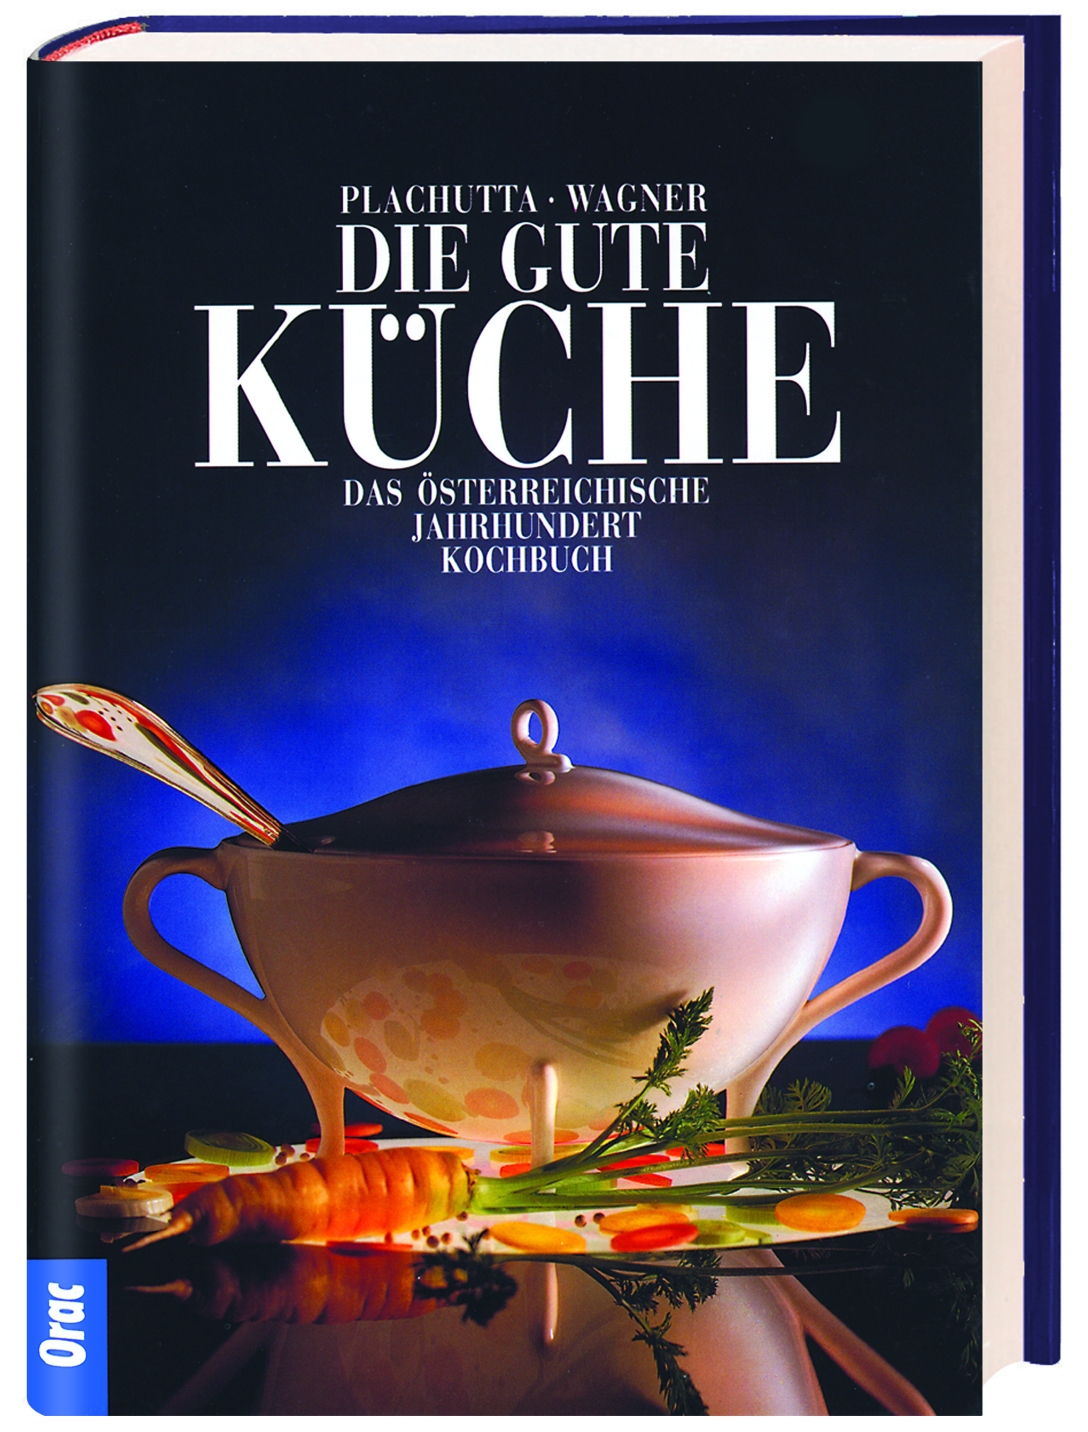 Buchcover von "Die gute Küche" von Christoph Wagner und Ewald Plachutta